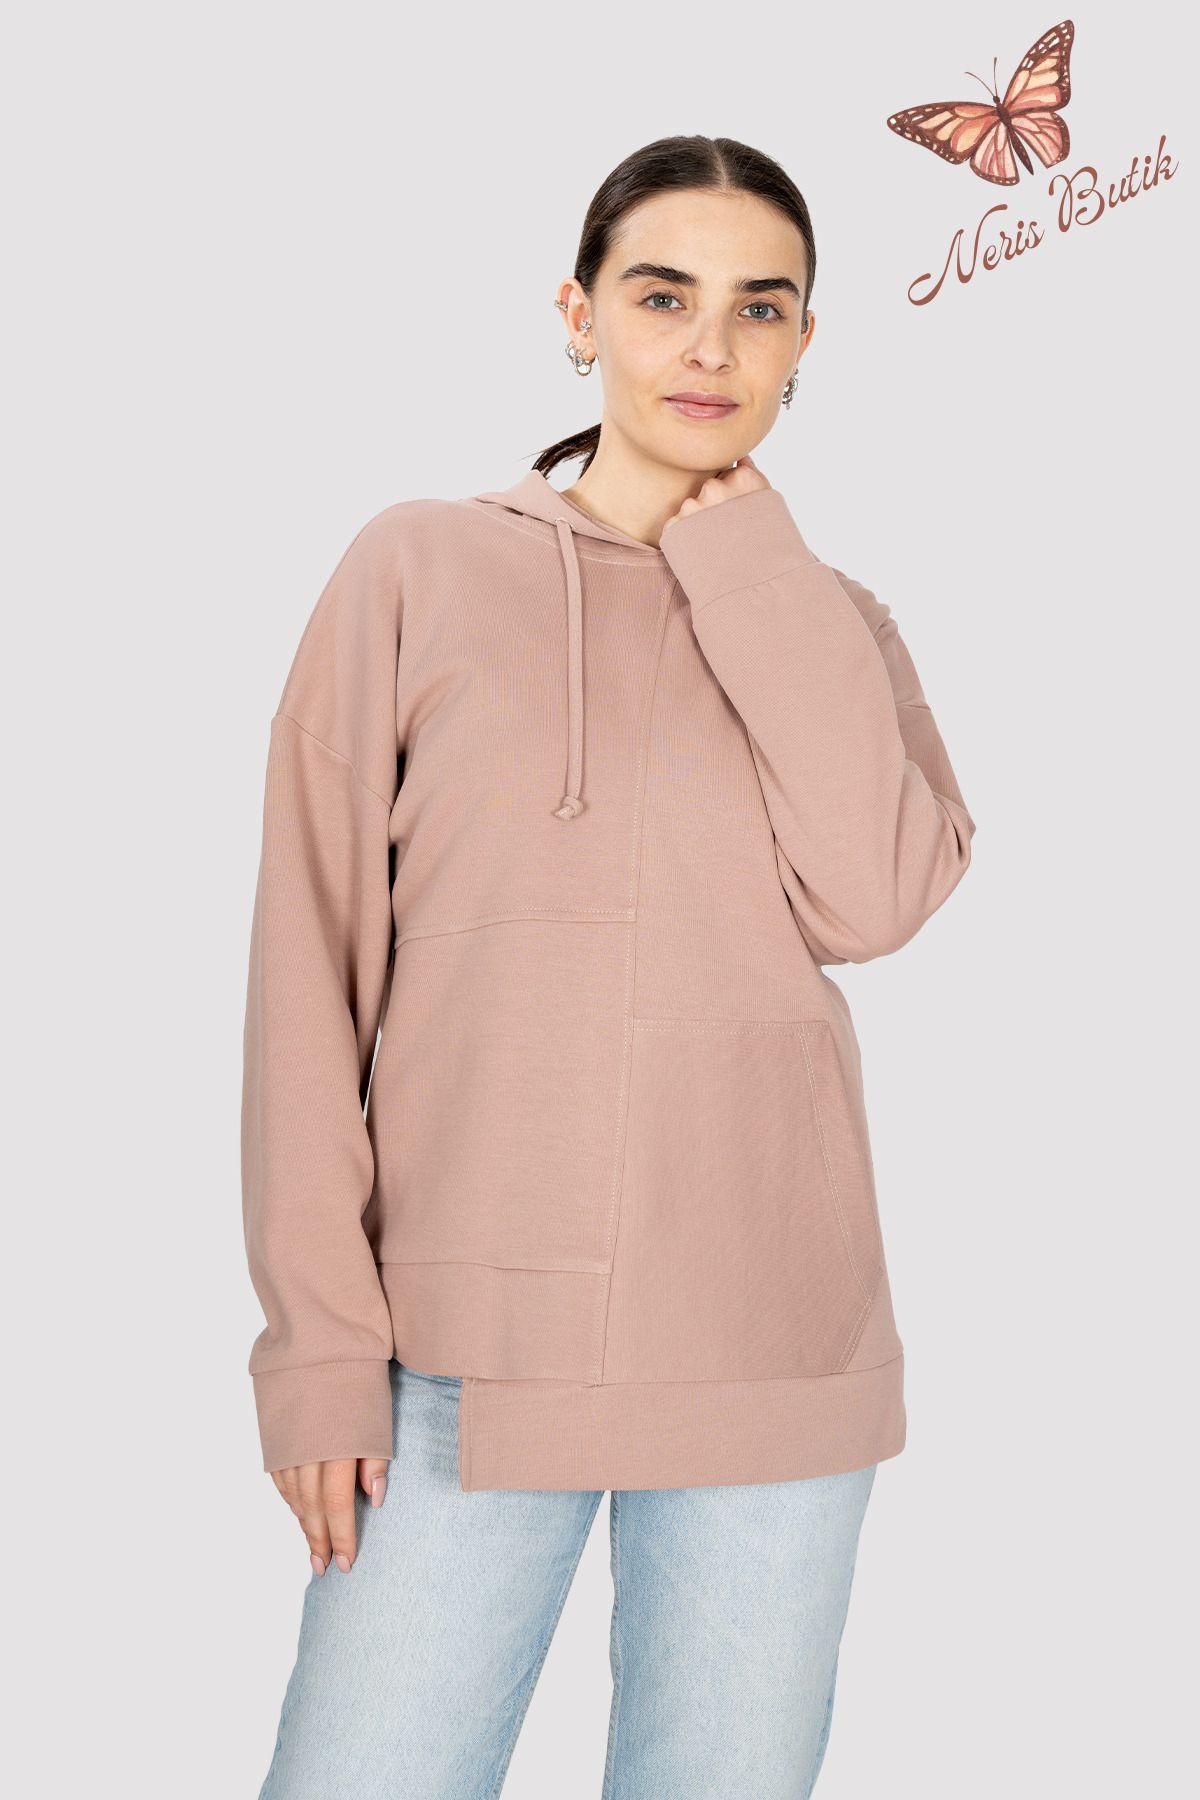 Neris Butik Kadın Kapüşonlu Tek Cep Detaylı Sweatshirt